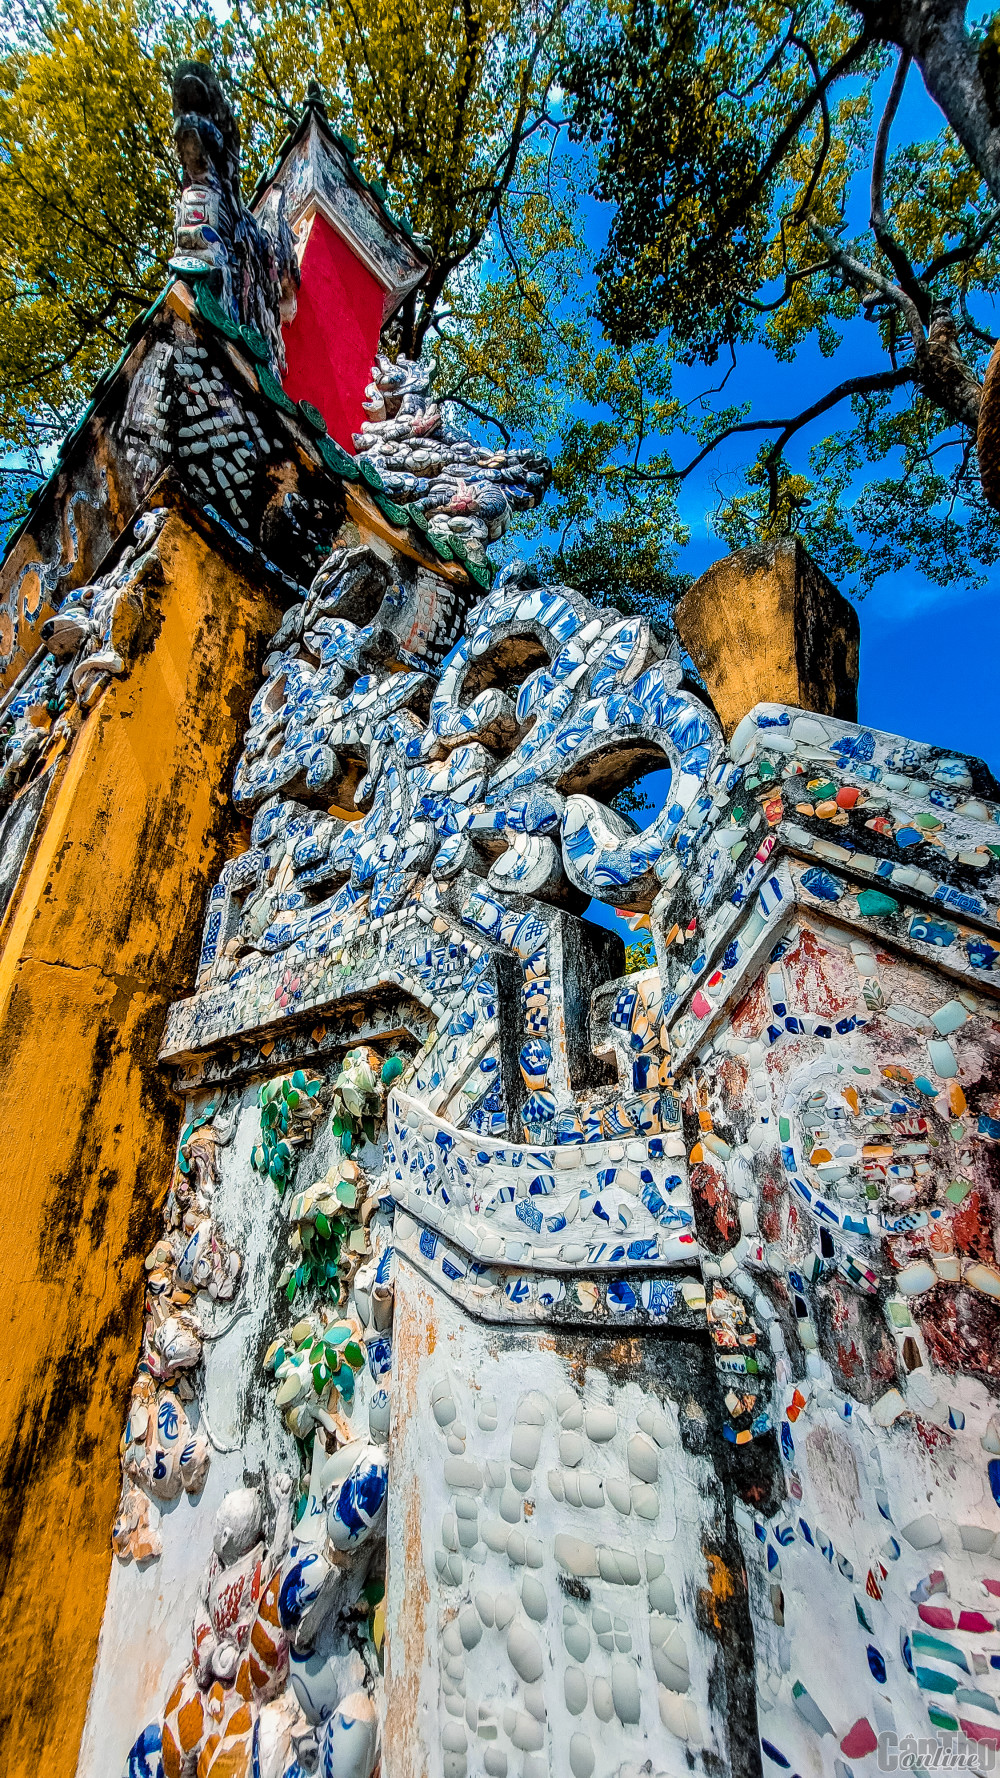 Kỹ thuật đính khảm sành sứ, tạo hoa văn trên cổng, nóc chùa ở chùa Hội Khánh là điểm nhấn kiến trúc độc đáo.